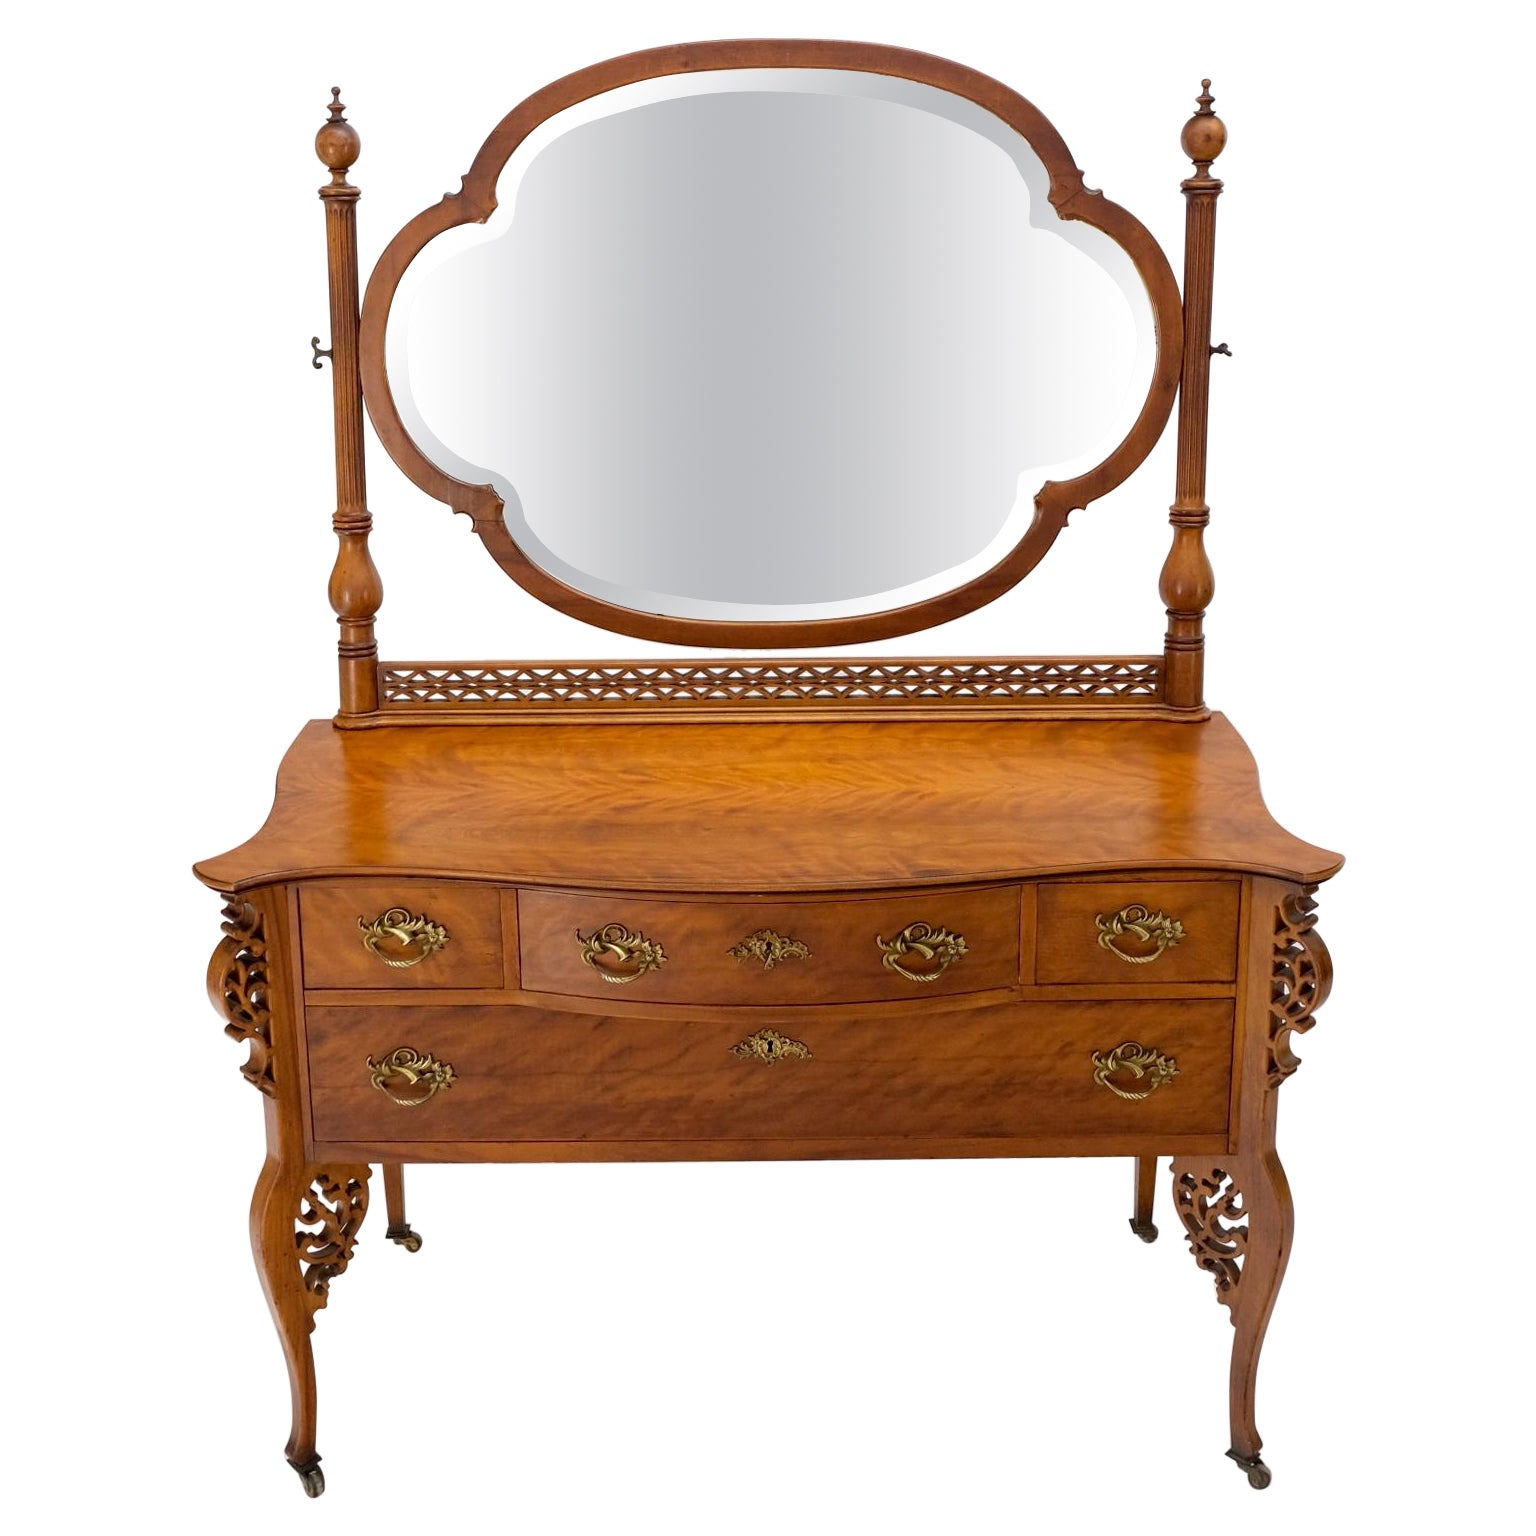 Ancienne commode sculptée à 4 tiroirs avec grand miroir pivotant biseauté en forme de love-clove